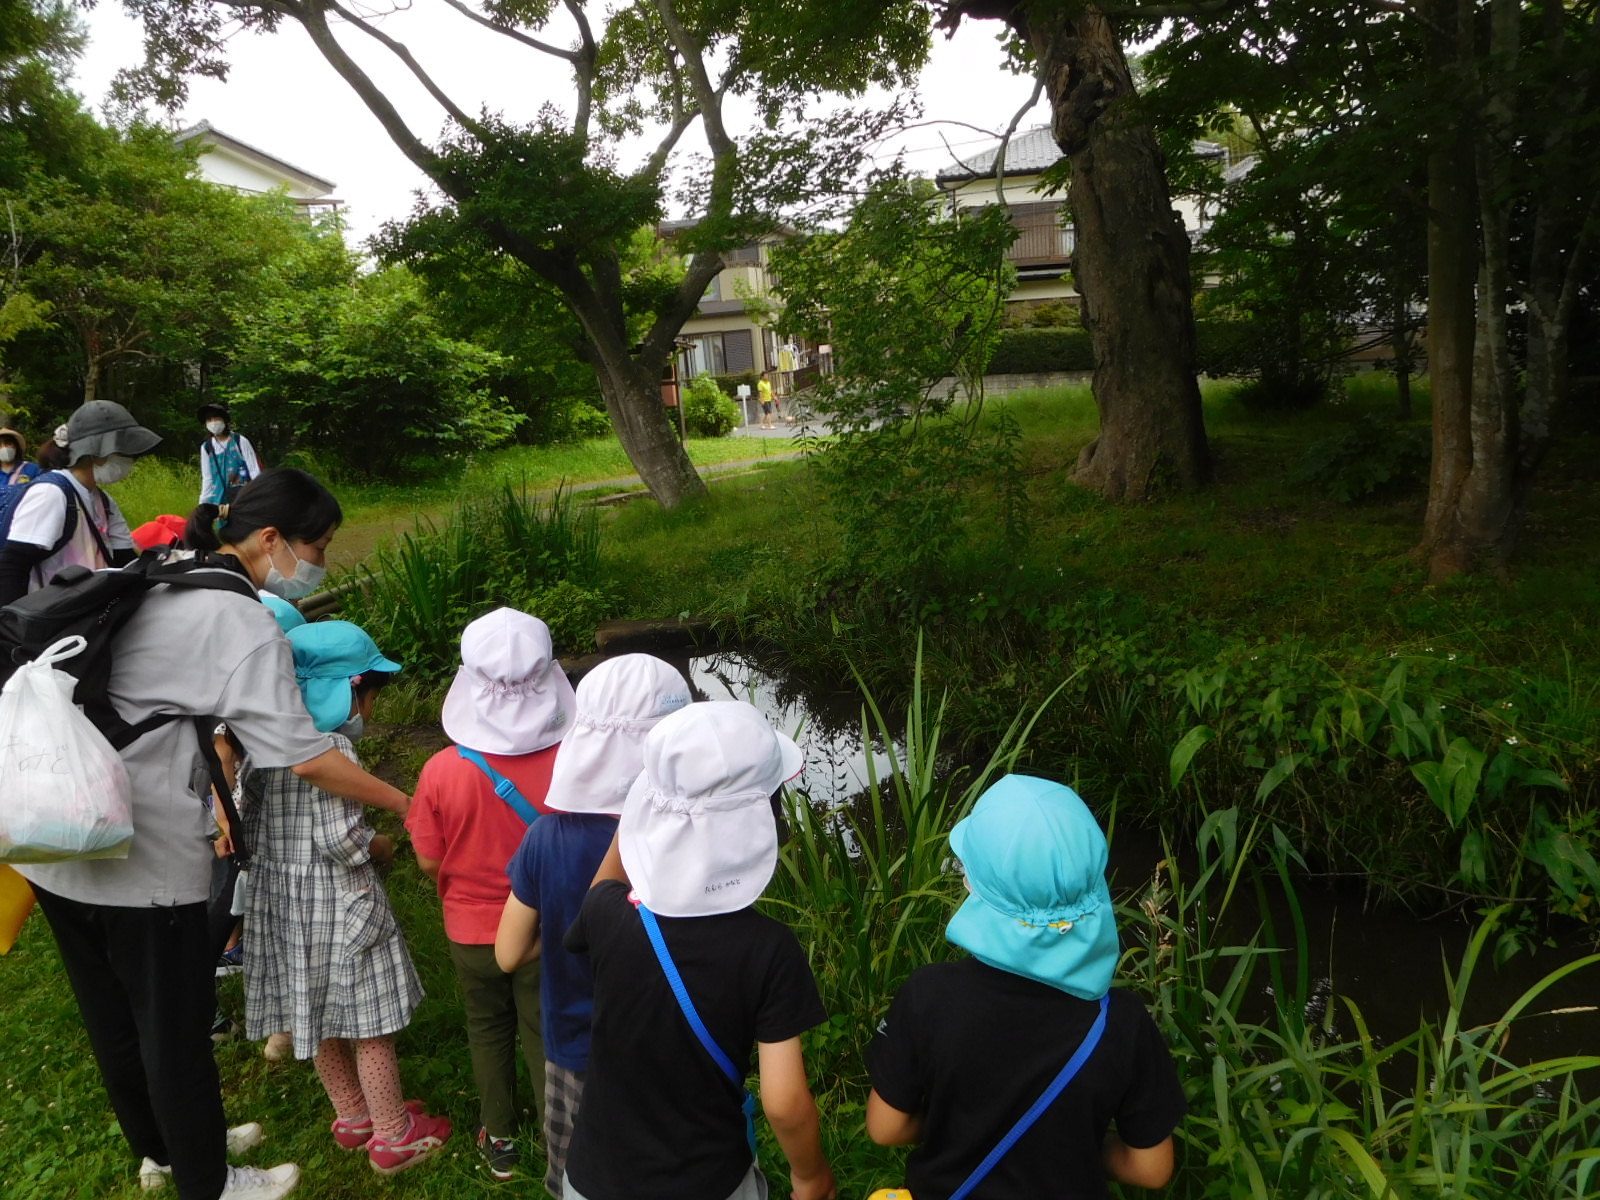 佐倉城址公園の菖蒲田で、園児や関係者が集まって水の方を見ている写真